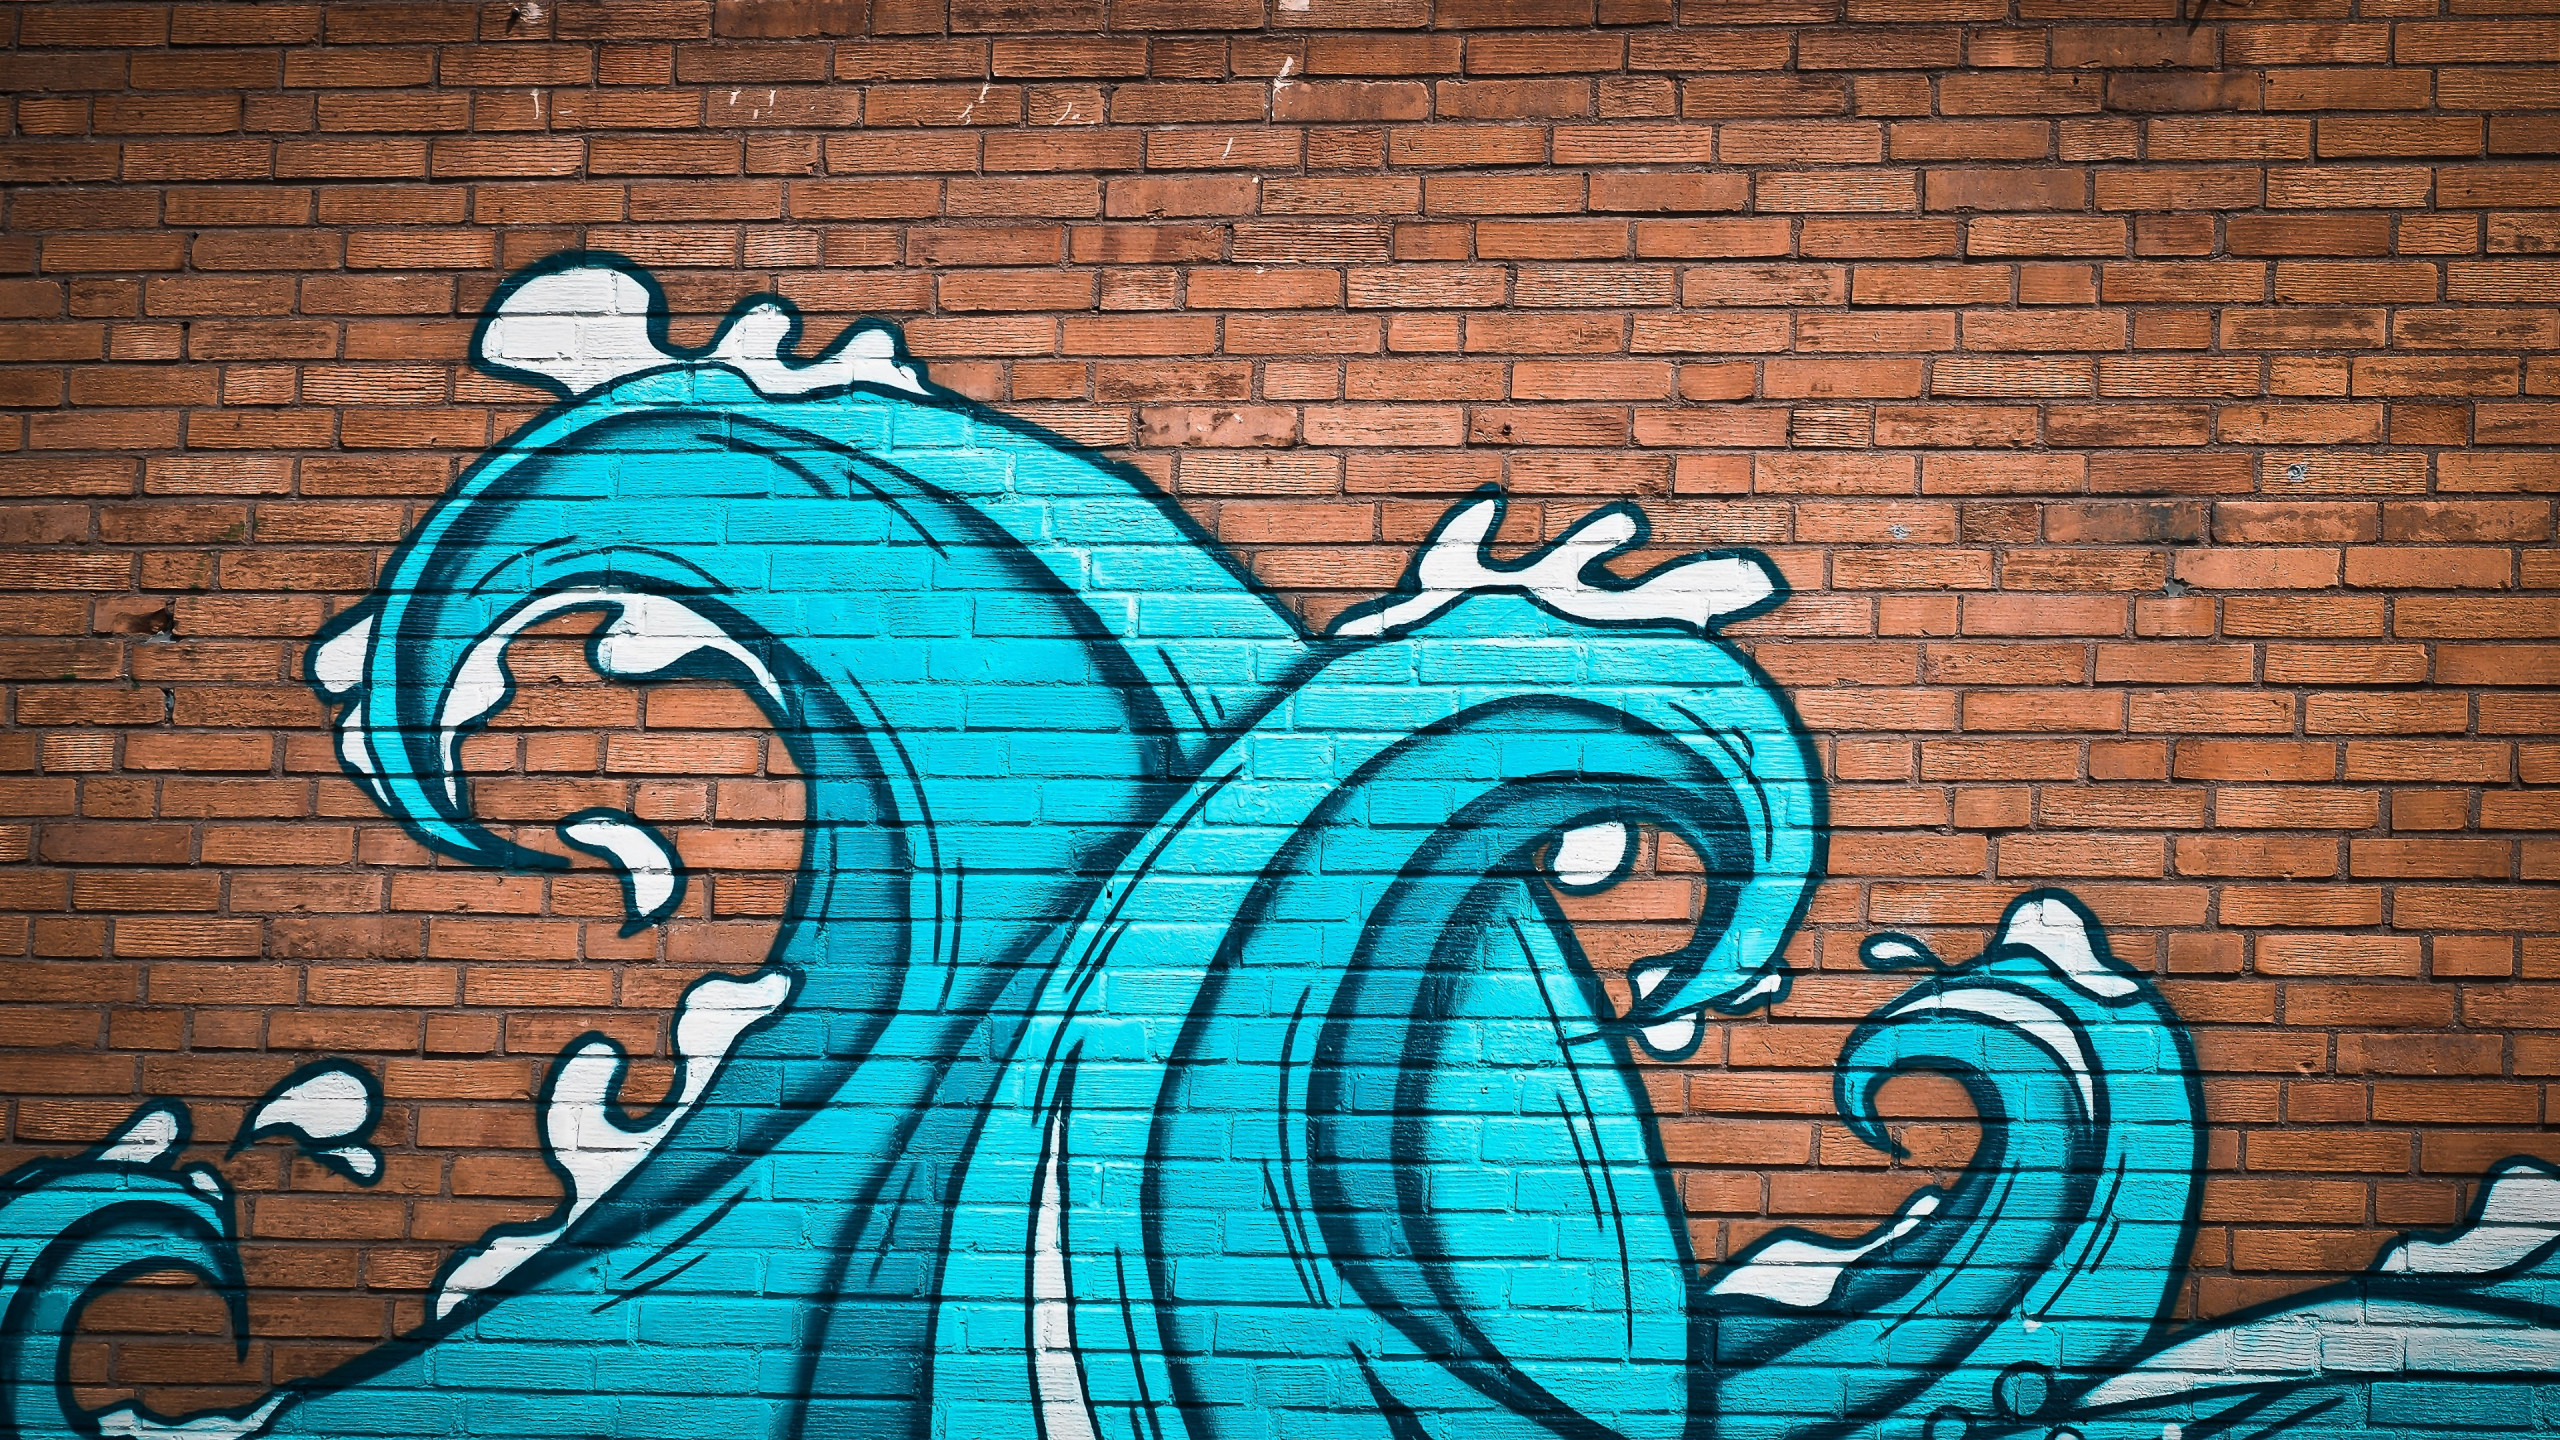 Graffiti waves on brick wall wallpaper 2560x1440